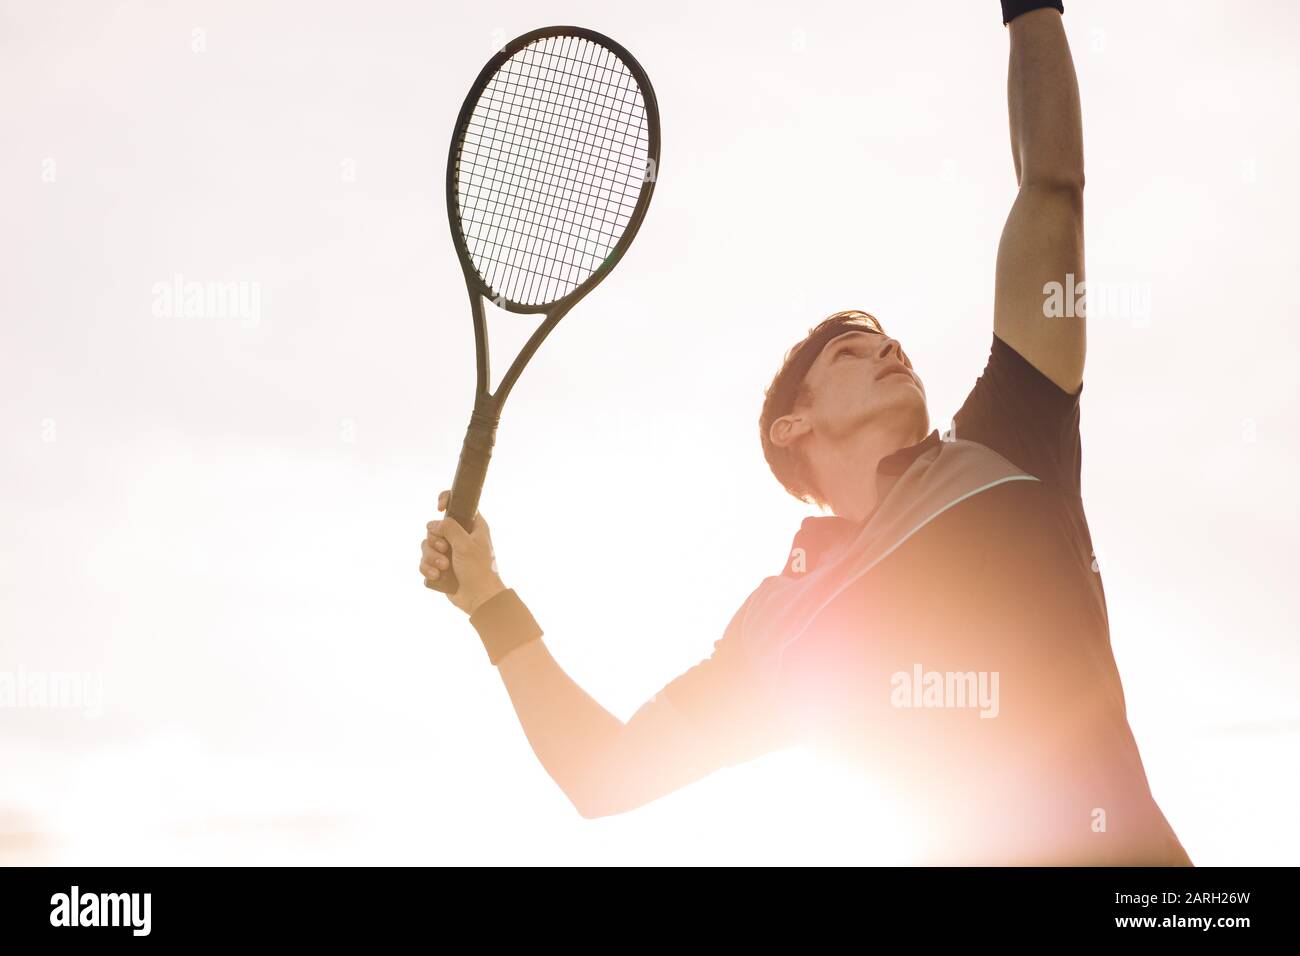 Giovane giocatore di tennis che sta per colpire la palla in una giornata di sole. Un tennista professionista che fa un servizio con luce solare brillante da dietro. Foto Stock